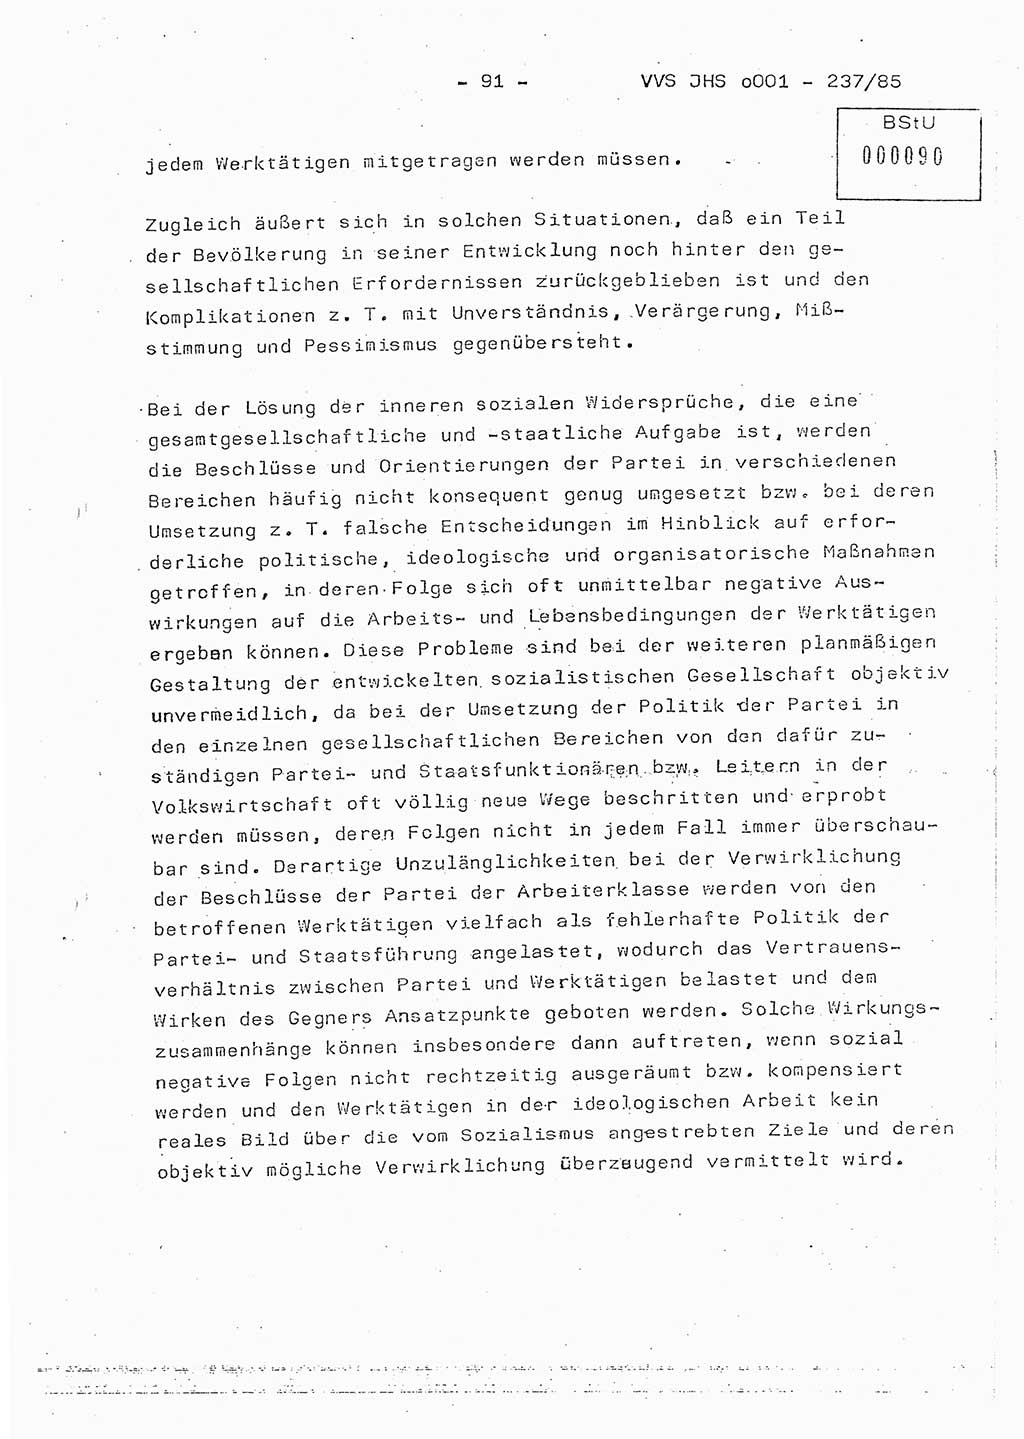 Dissertation Oberstleutnant Peter Jakulski (JHS), Oberstleutnat Christian Rudolph (HA Ⅸ), Major Horst Böttger (ZMD), Major Wolfgang Grüneberg (JHS), Major Albert Meutsch (JHS), Ministerium für Staatssicherheit (MfS) [Deutsche Demokratische Republik (DDR)], Juristische Hochschule (JHS), Vertrauliche Verschlußsache (VVS) o001-237/85, Potsdam 1985, Seite 91 (Diss. MfS DDR JHS VVS o001-237/85 1985, S. 91)